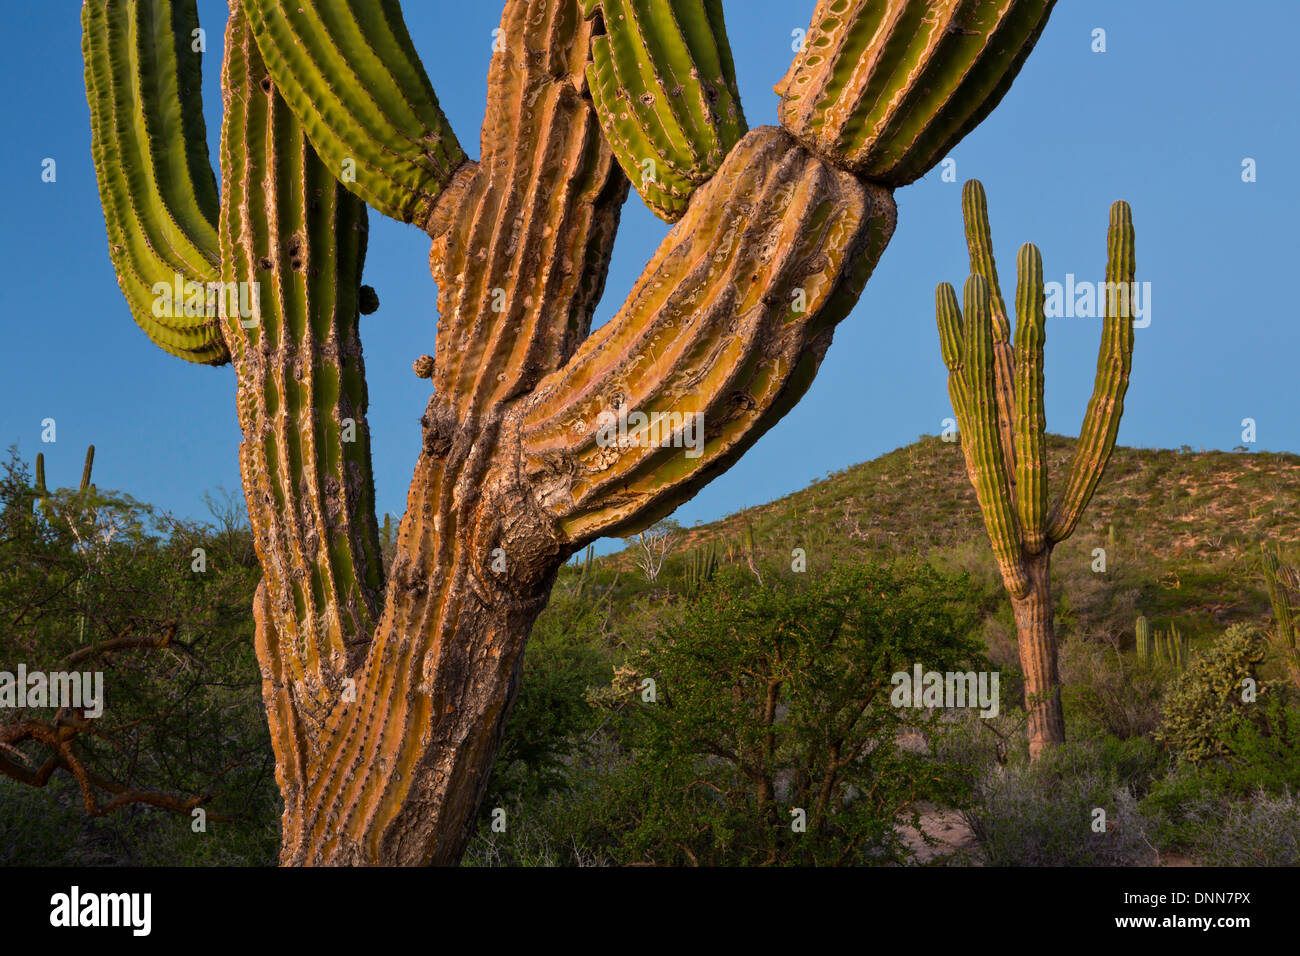 Cardon Cactus (Pachycereus pringlei) at sunrise in Baja, Mexico Stock Photo